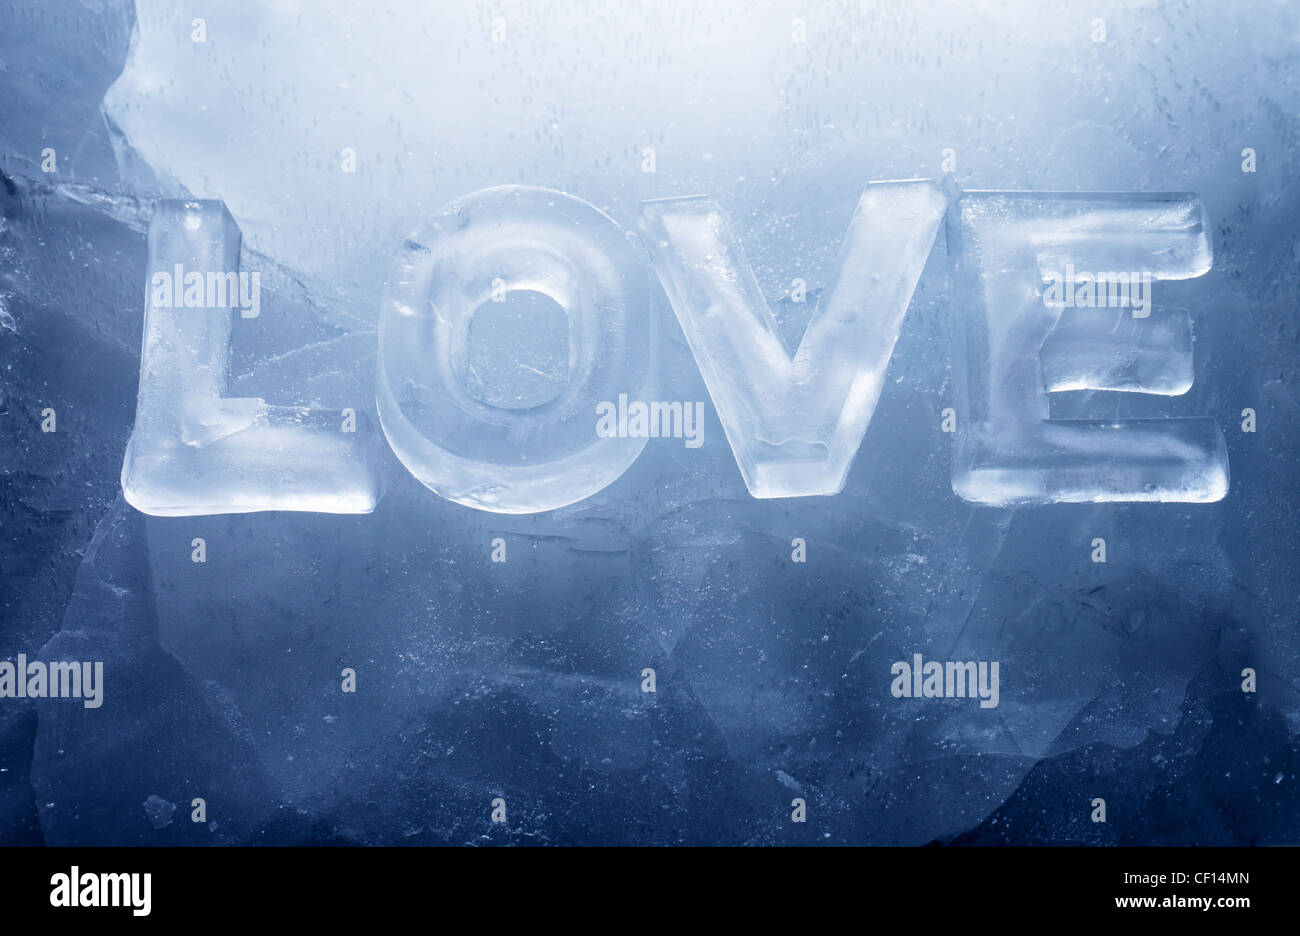 Wort "LOVE" mit echtem Eisbuchstaben auf dem Eis gemacht. Stockfoto